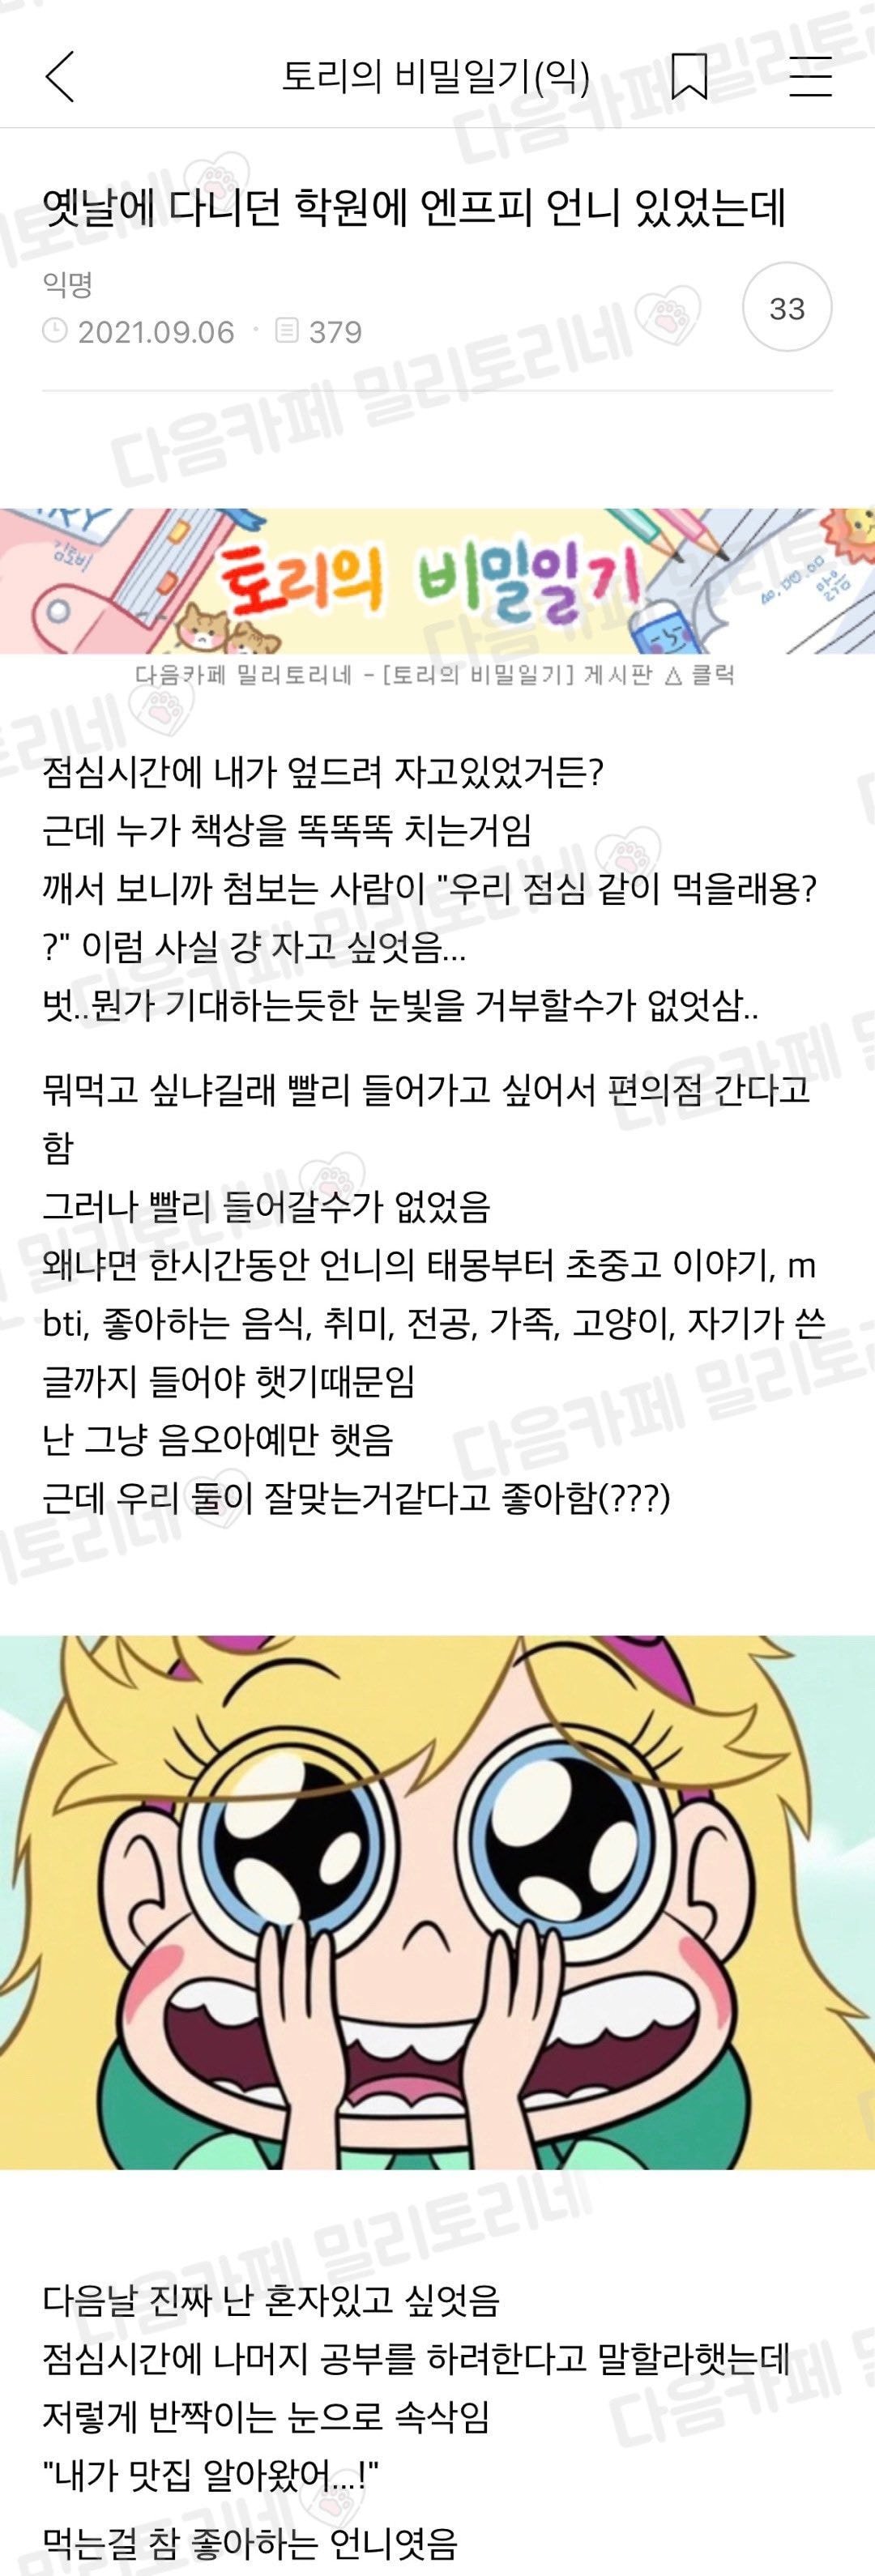 학원에서 만난 최강인싸 언니.jpg